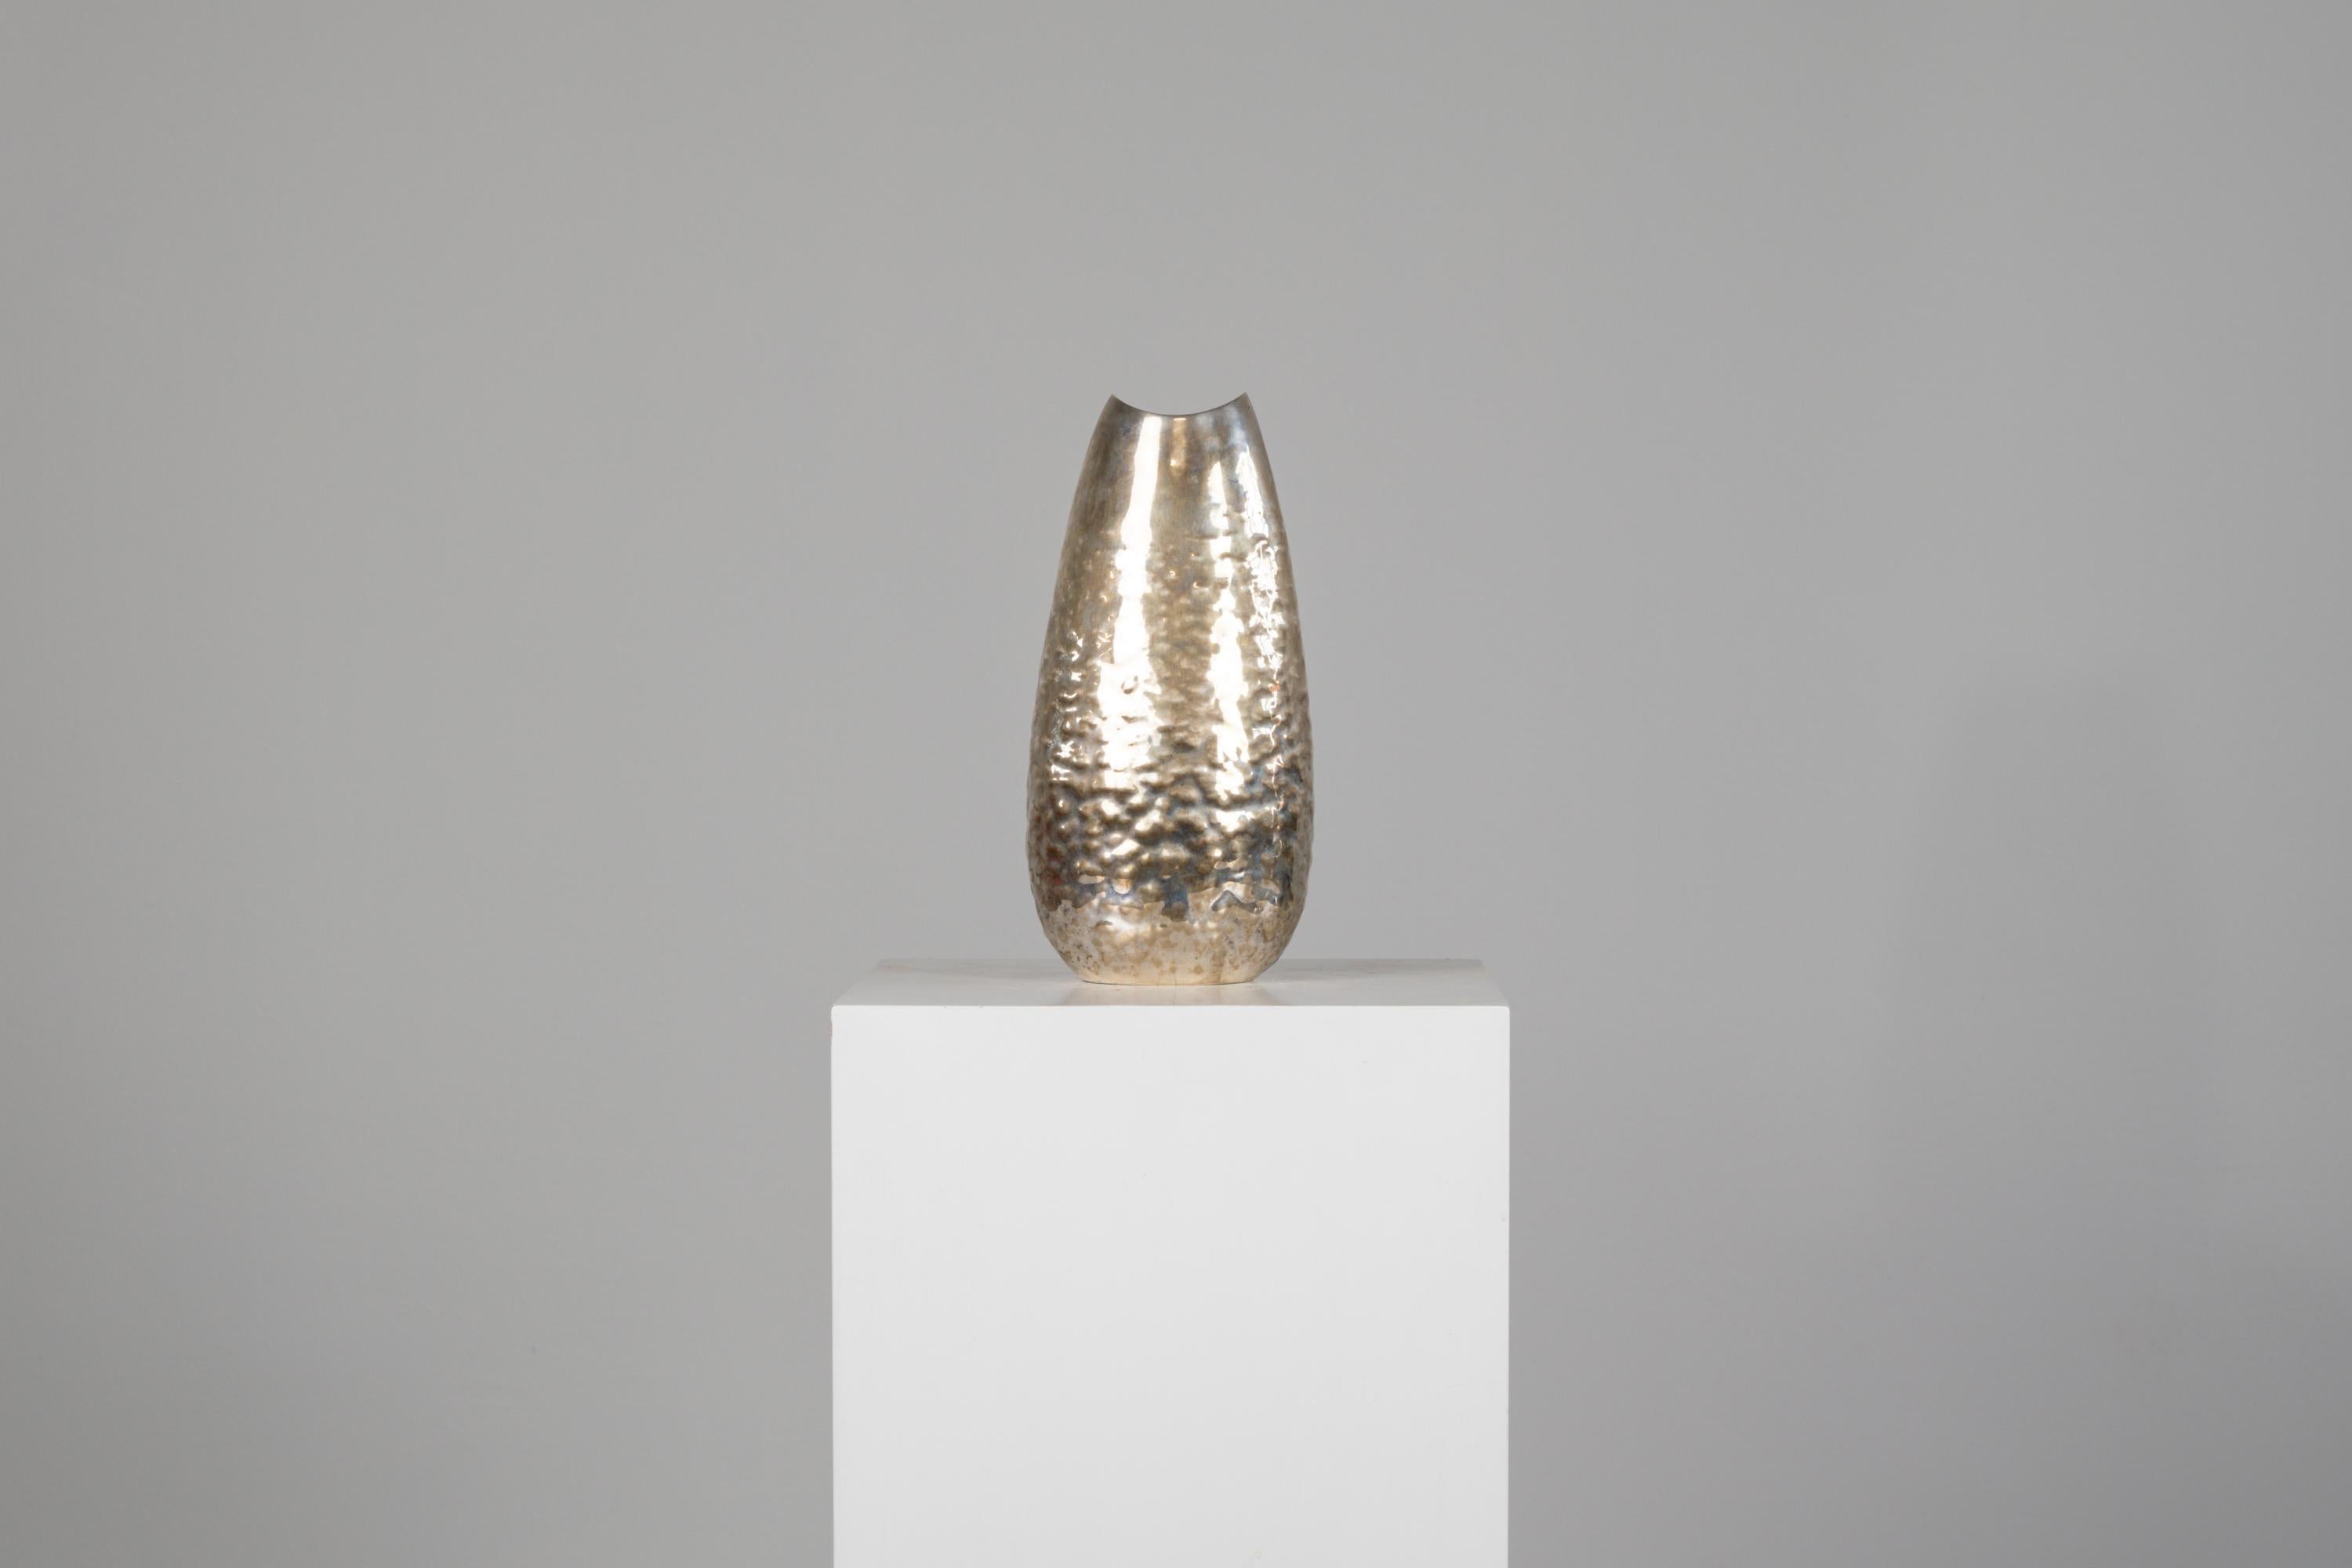 Schöne ovale Vase aus gehämmertem Silber mit leichter Quaderoberfläche, entworfen von Luigi Genazzi und hergestellt von Calderoni.
Unter dem Sockel mit der Herstellermarke (Calderoni Jewels) gekennzeichnet
Datierbar in die zweite Hälfte des 20.